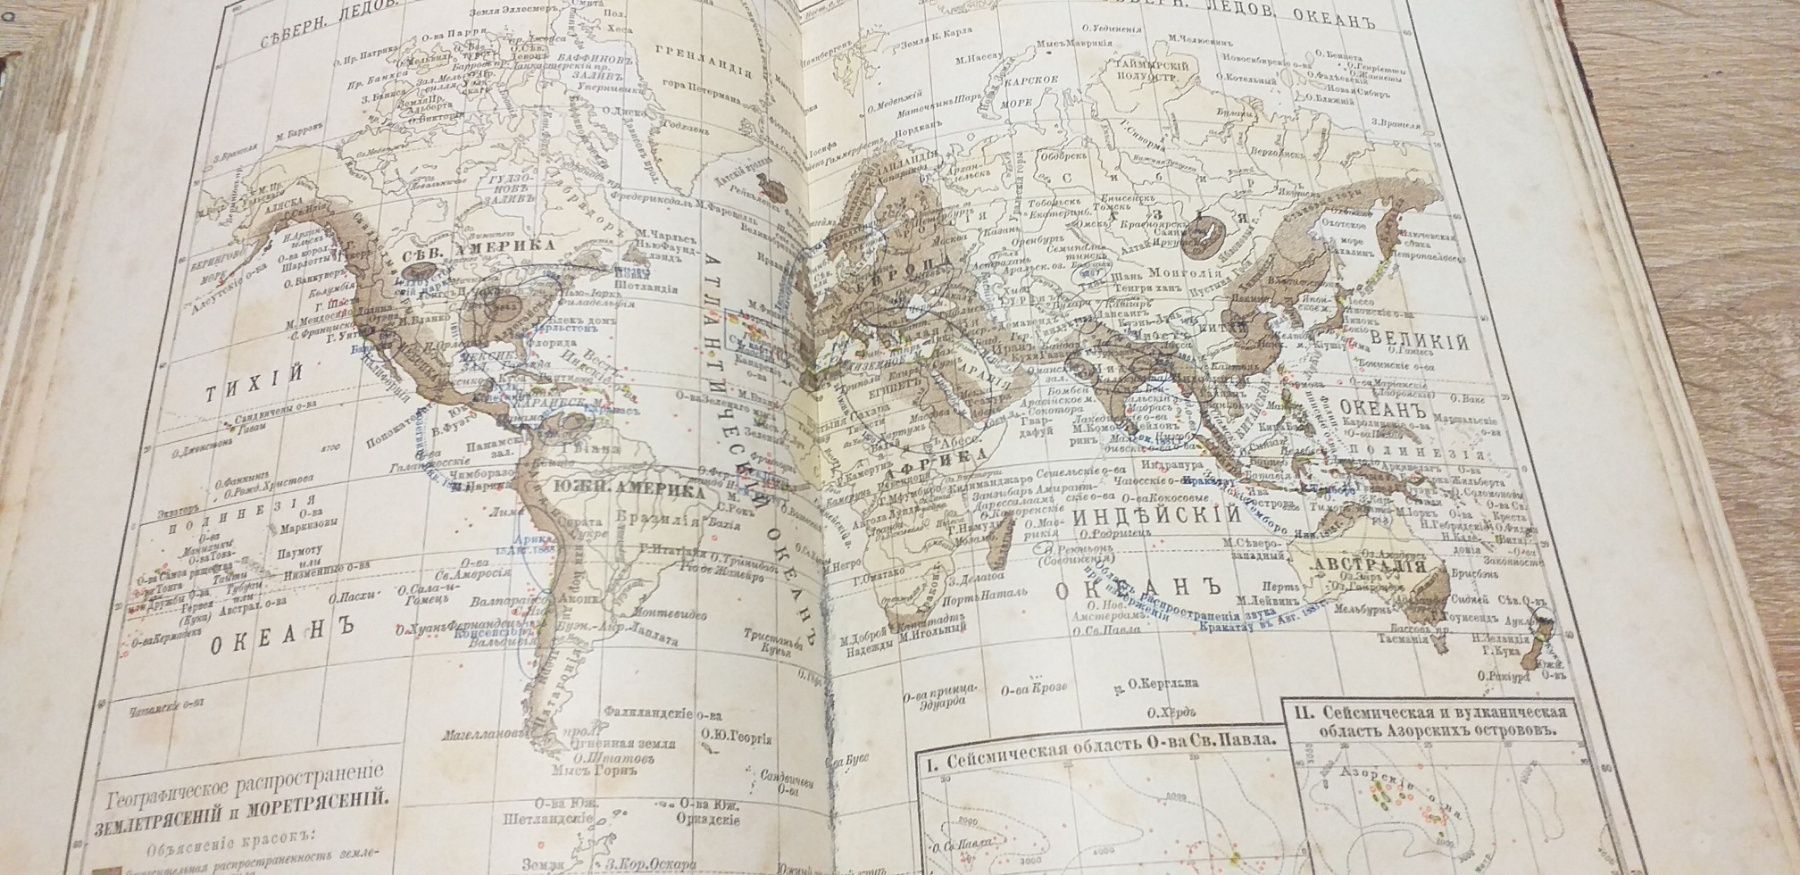 Неймайр 1899г История Земли 2 тома антикварный старые книги